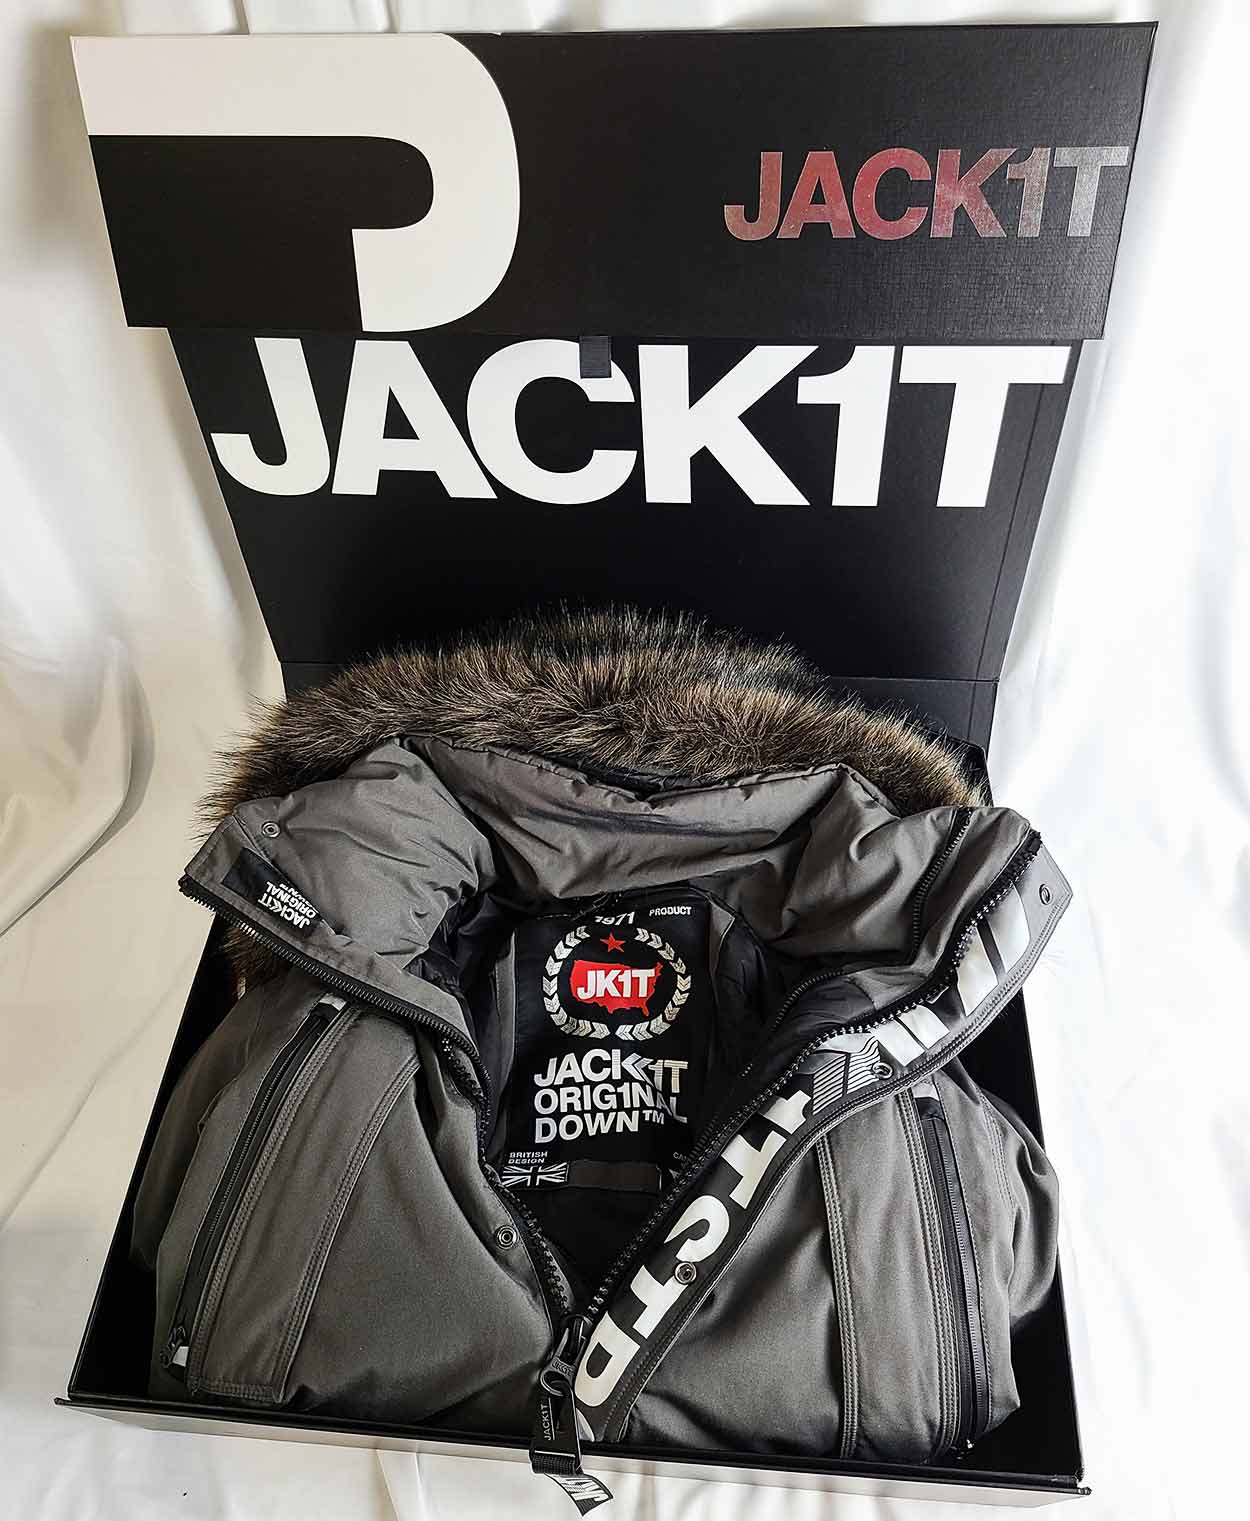 jack1t packaging branding